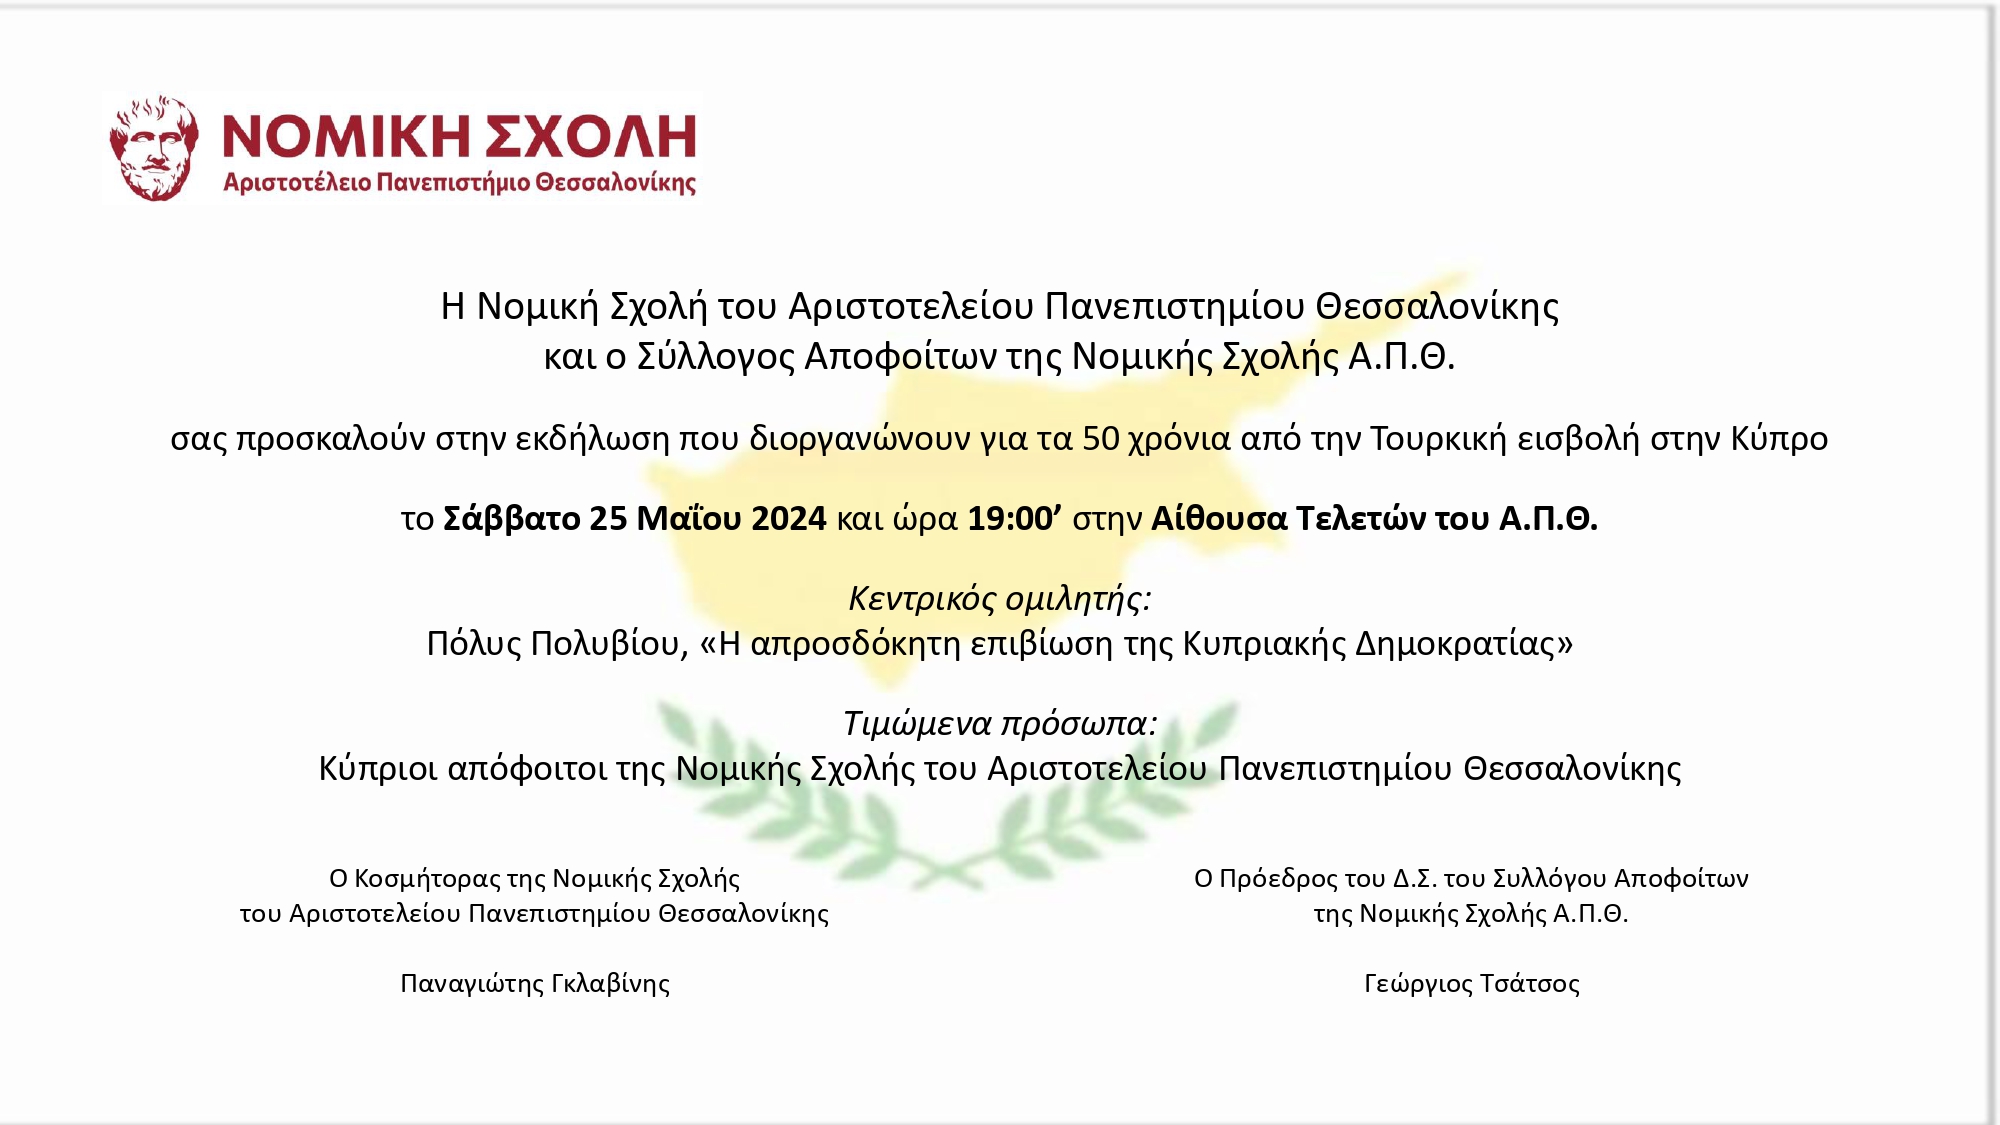 Πρόσκληση Εκδήλωσης Νομικής και Συλλόγου Αποφοίτων Νομικής ΑΠΘ για την Κύπρο page 0001